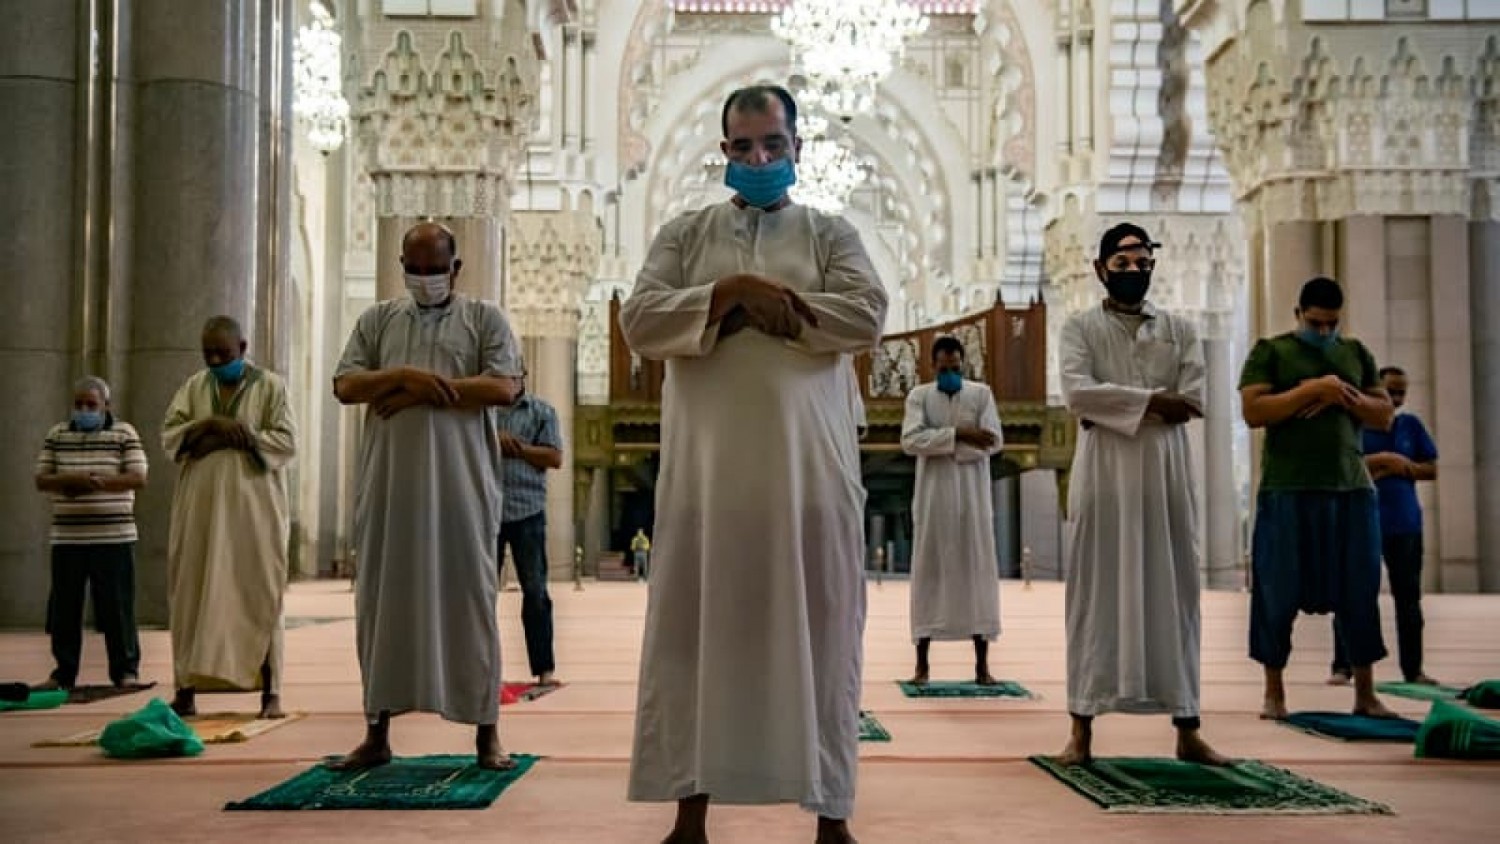 Maroc : Face à la sécheresse, appel à invoquer Dieu pour la pluie dans les mosquées, sur ordre du Roi Mohamed VI